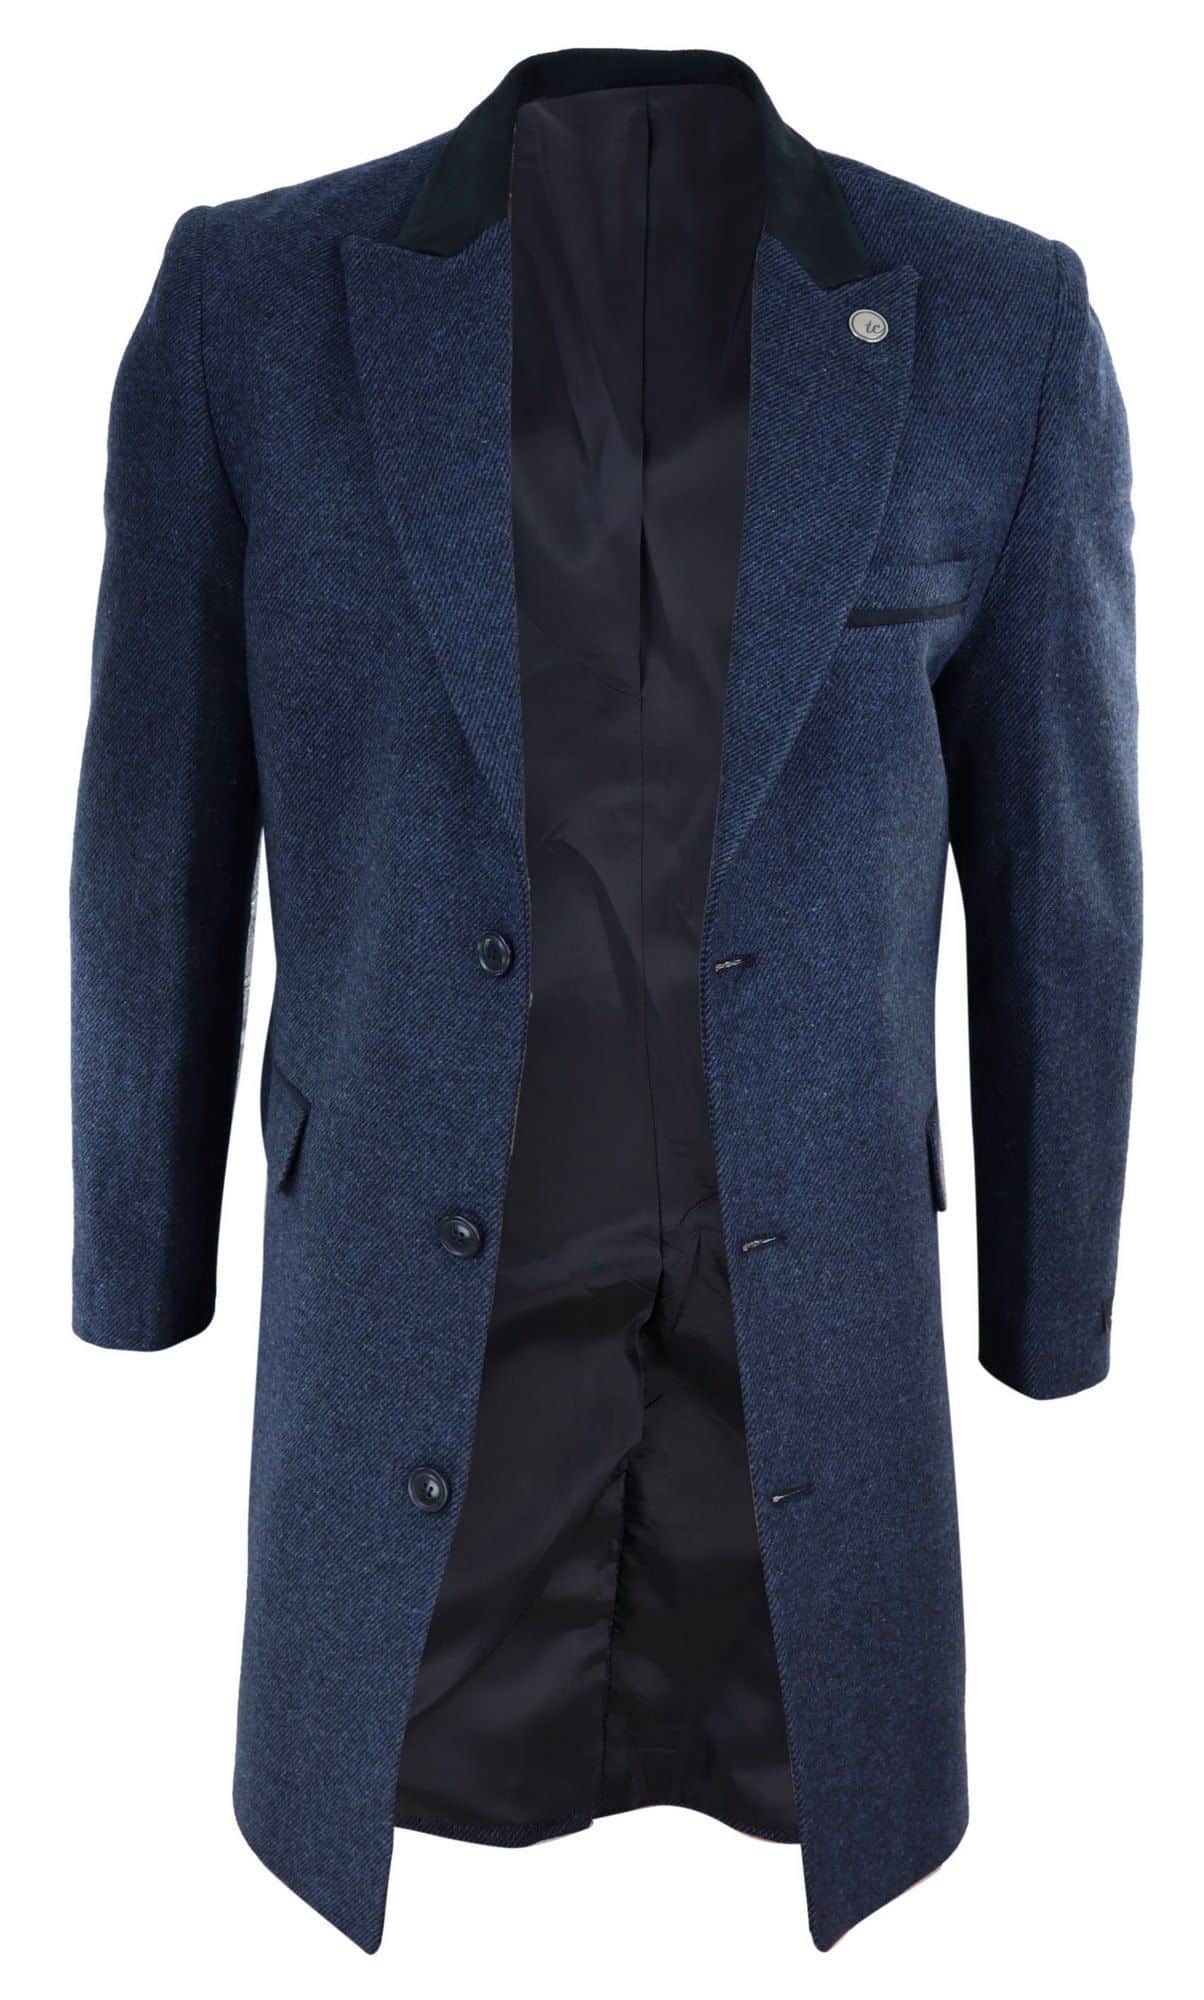 Herringbone Tweed 3/4 Long Overcoat-Navy: Buy Online - Happy Gentleman